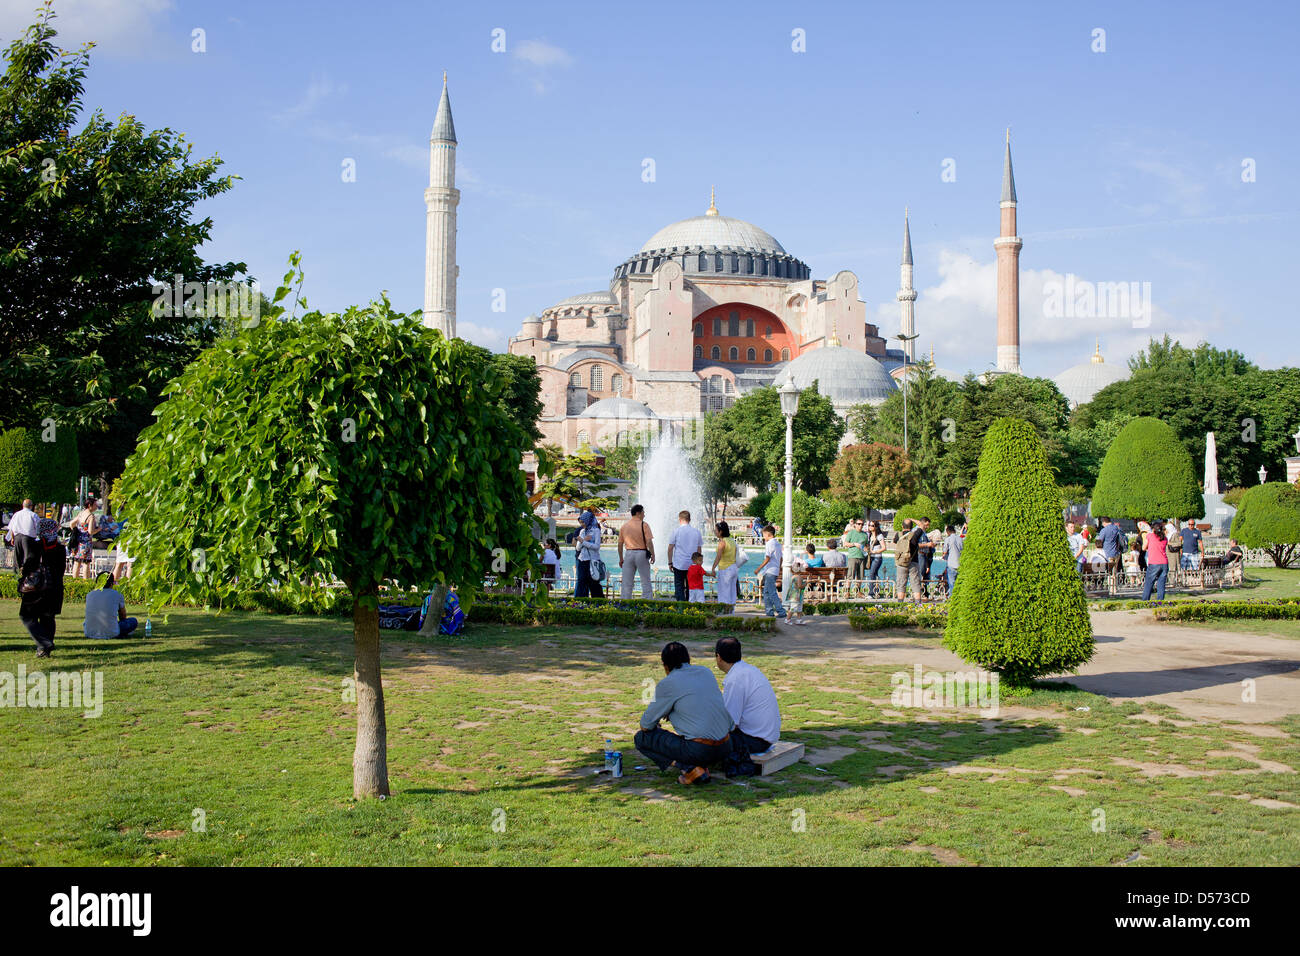 Sultan Ahmet Park et de l'architecture byzantine Sainte-Sophie à Istanbul, Turquie. Banque D'Images